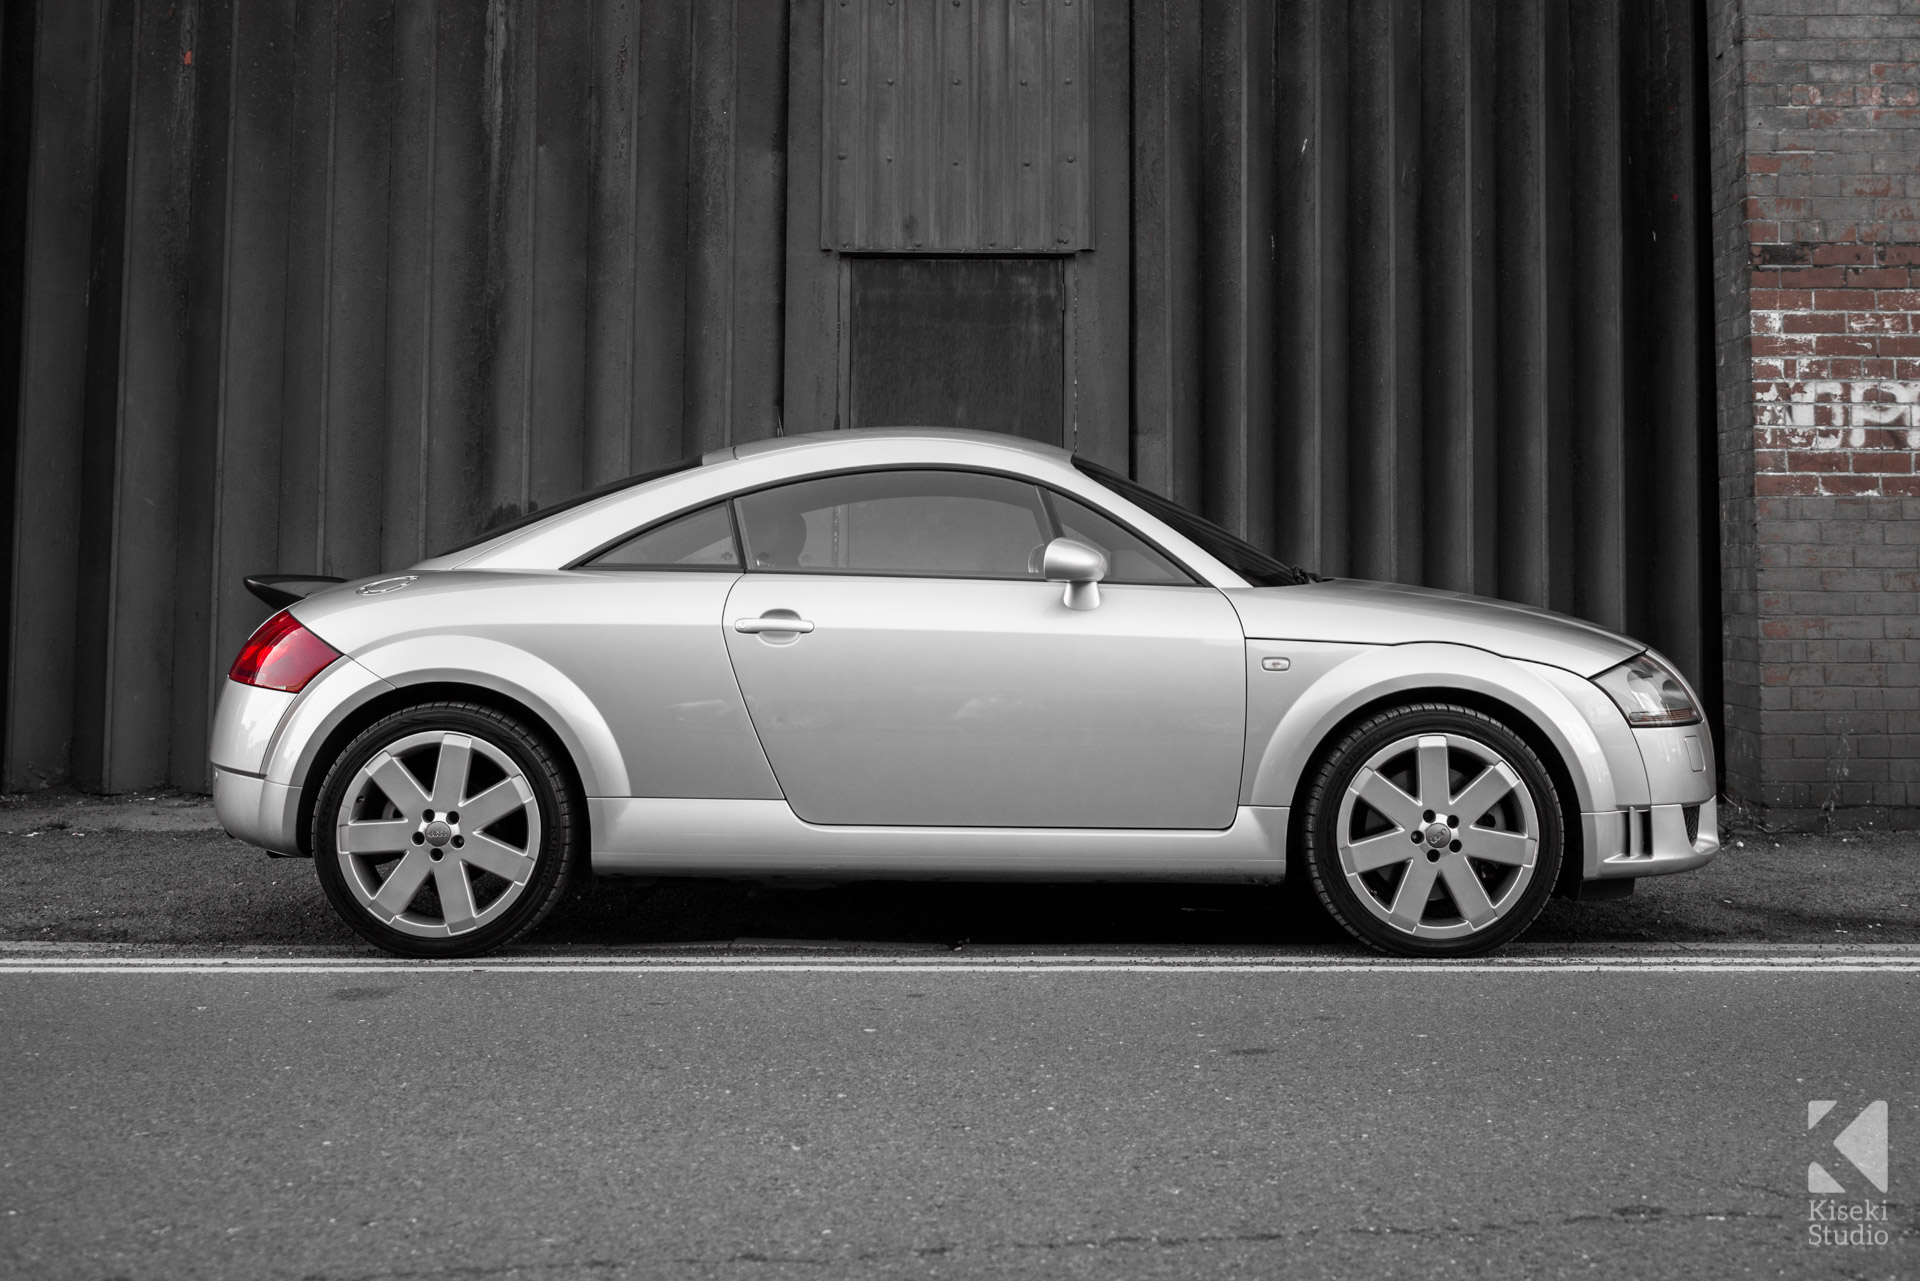 Audi TT V6 8N in Silver